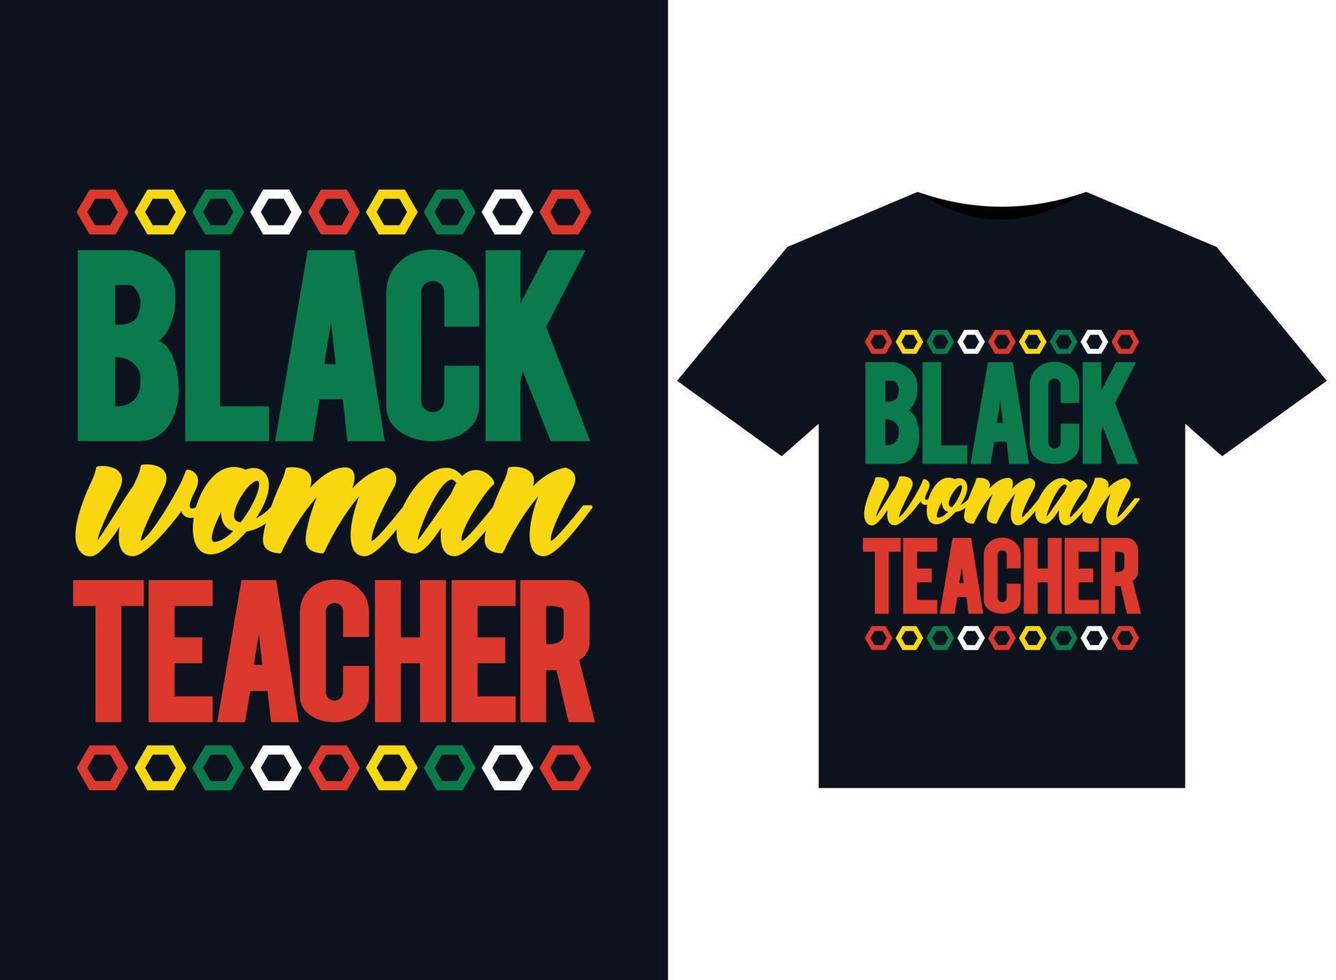 ilustrações de professora negra para design de camisetas prontas para impressão vetor